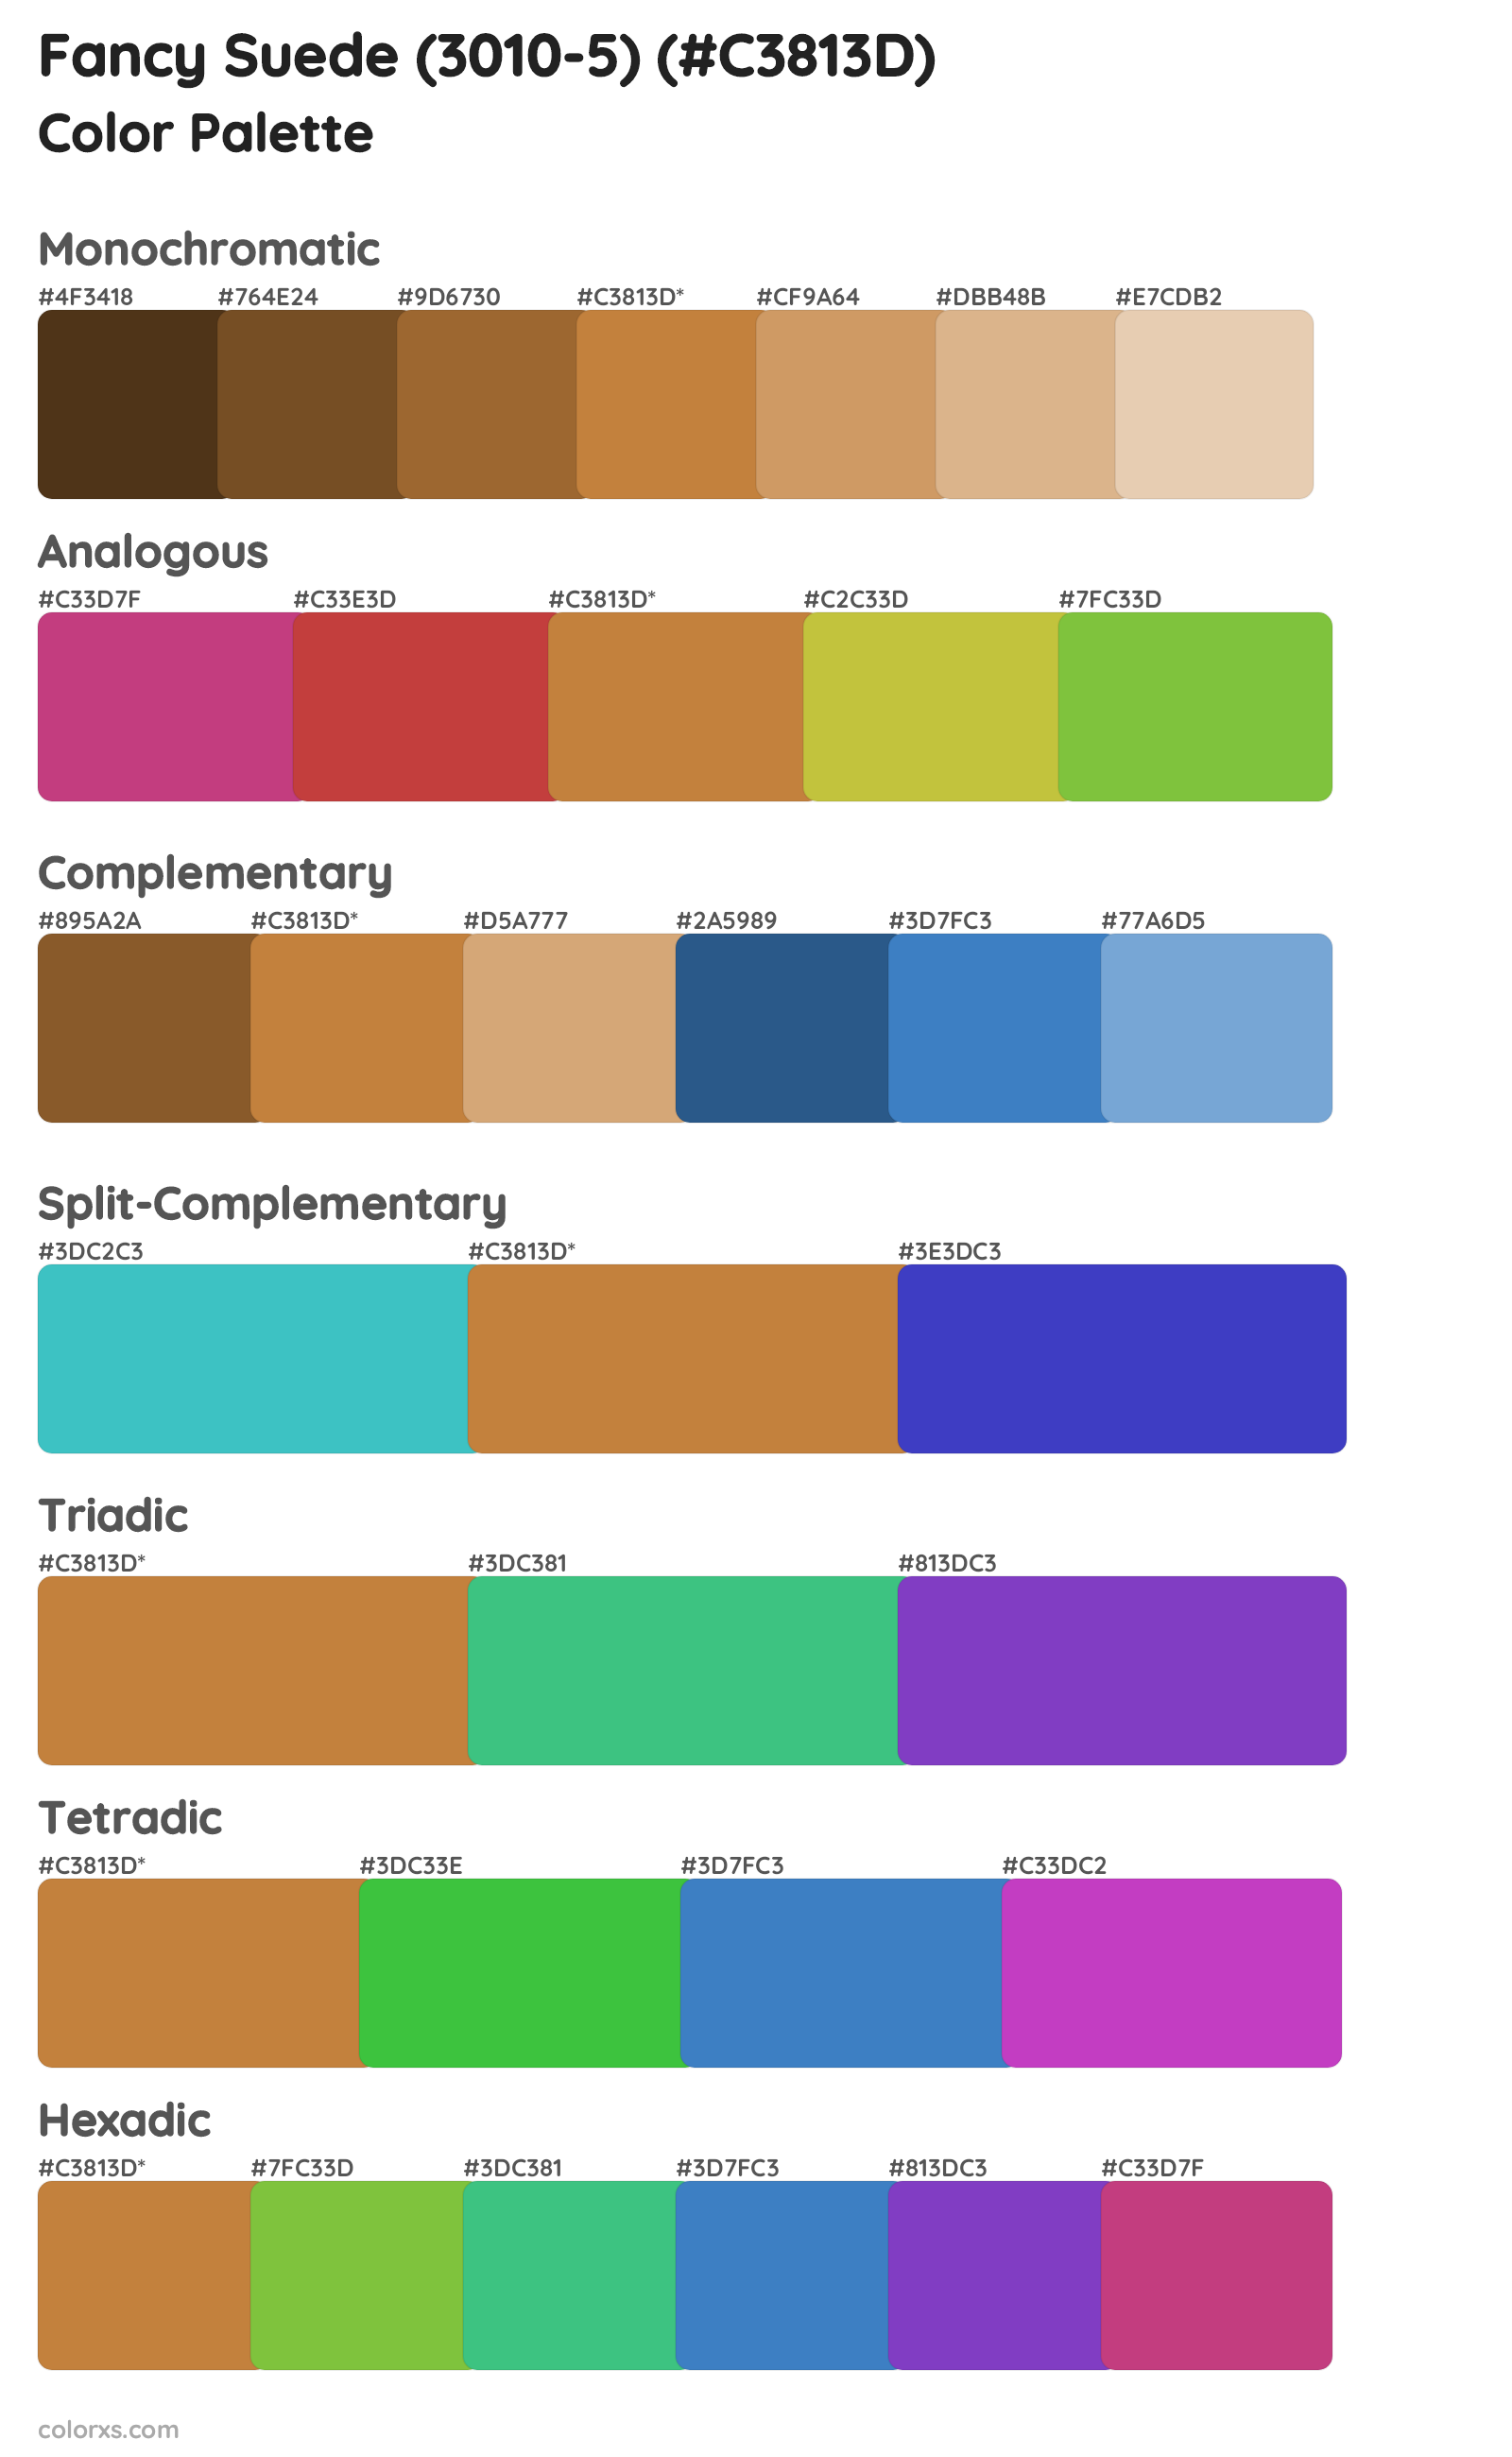 Fancy Suede (3010-5) Color Scheme Palettes